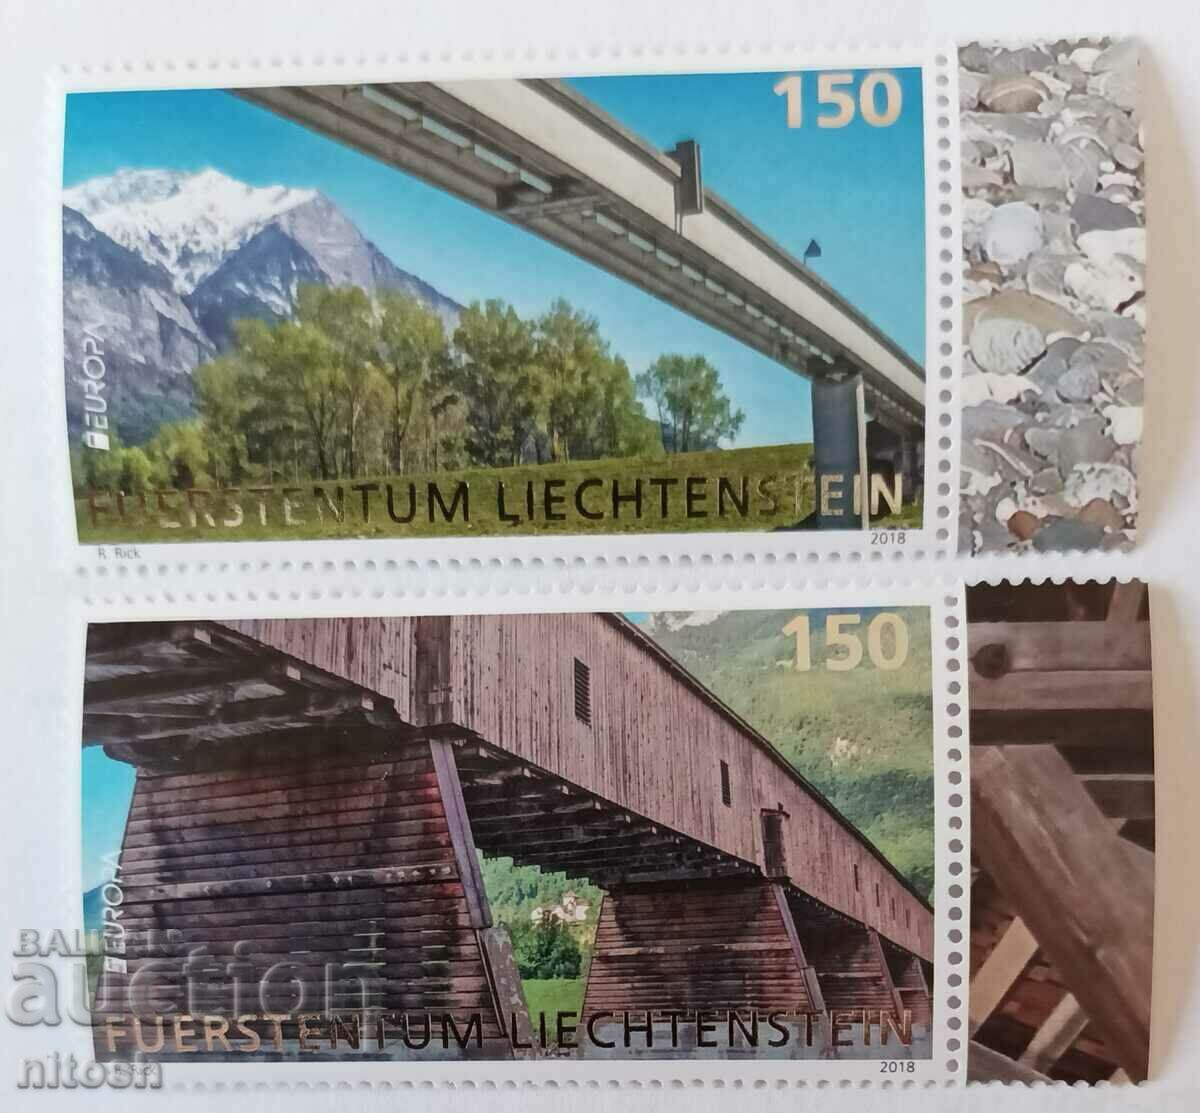 2018, Liechtenstein, Europe, bridges